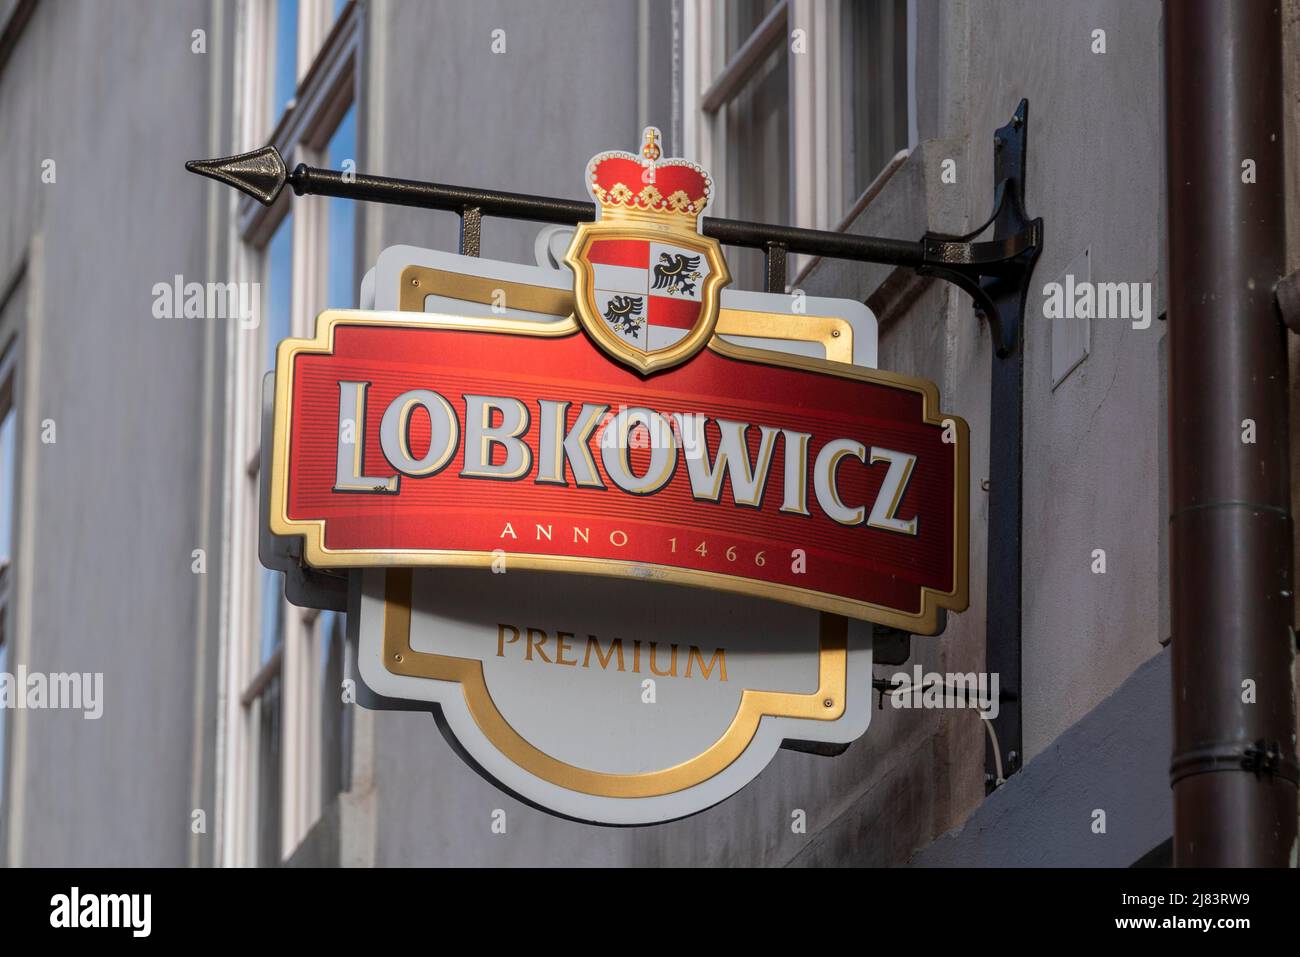 Lobkowicz, Ausleger fuer Biermarke, Prag, Tschechien Stock Photo